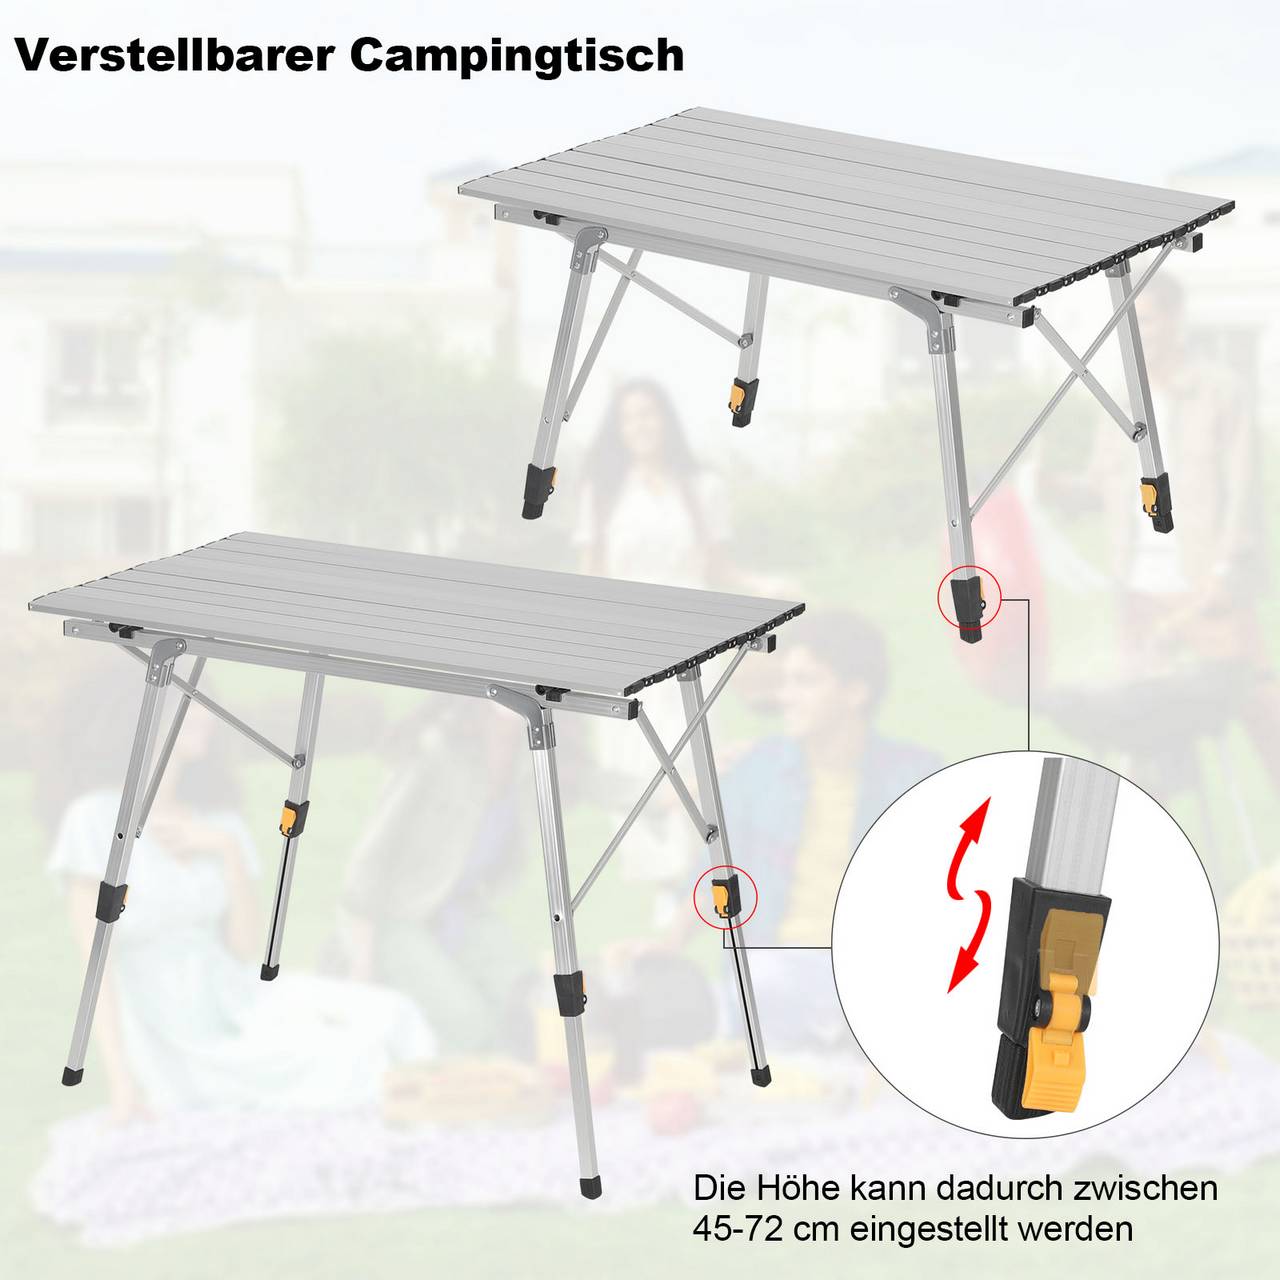 Table de camping Woltu Table de camping pliante léger et portable. Table de  pique-nique en aluminium. 56x46x40cm